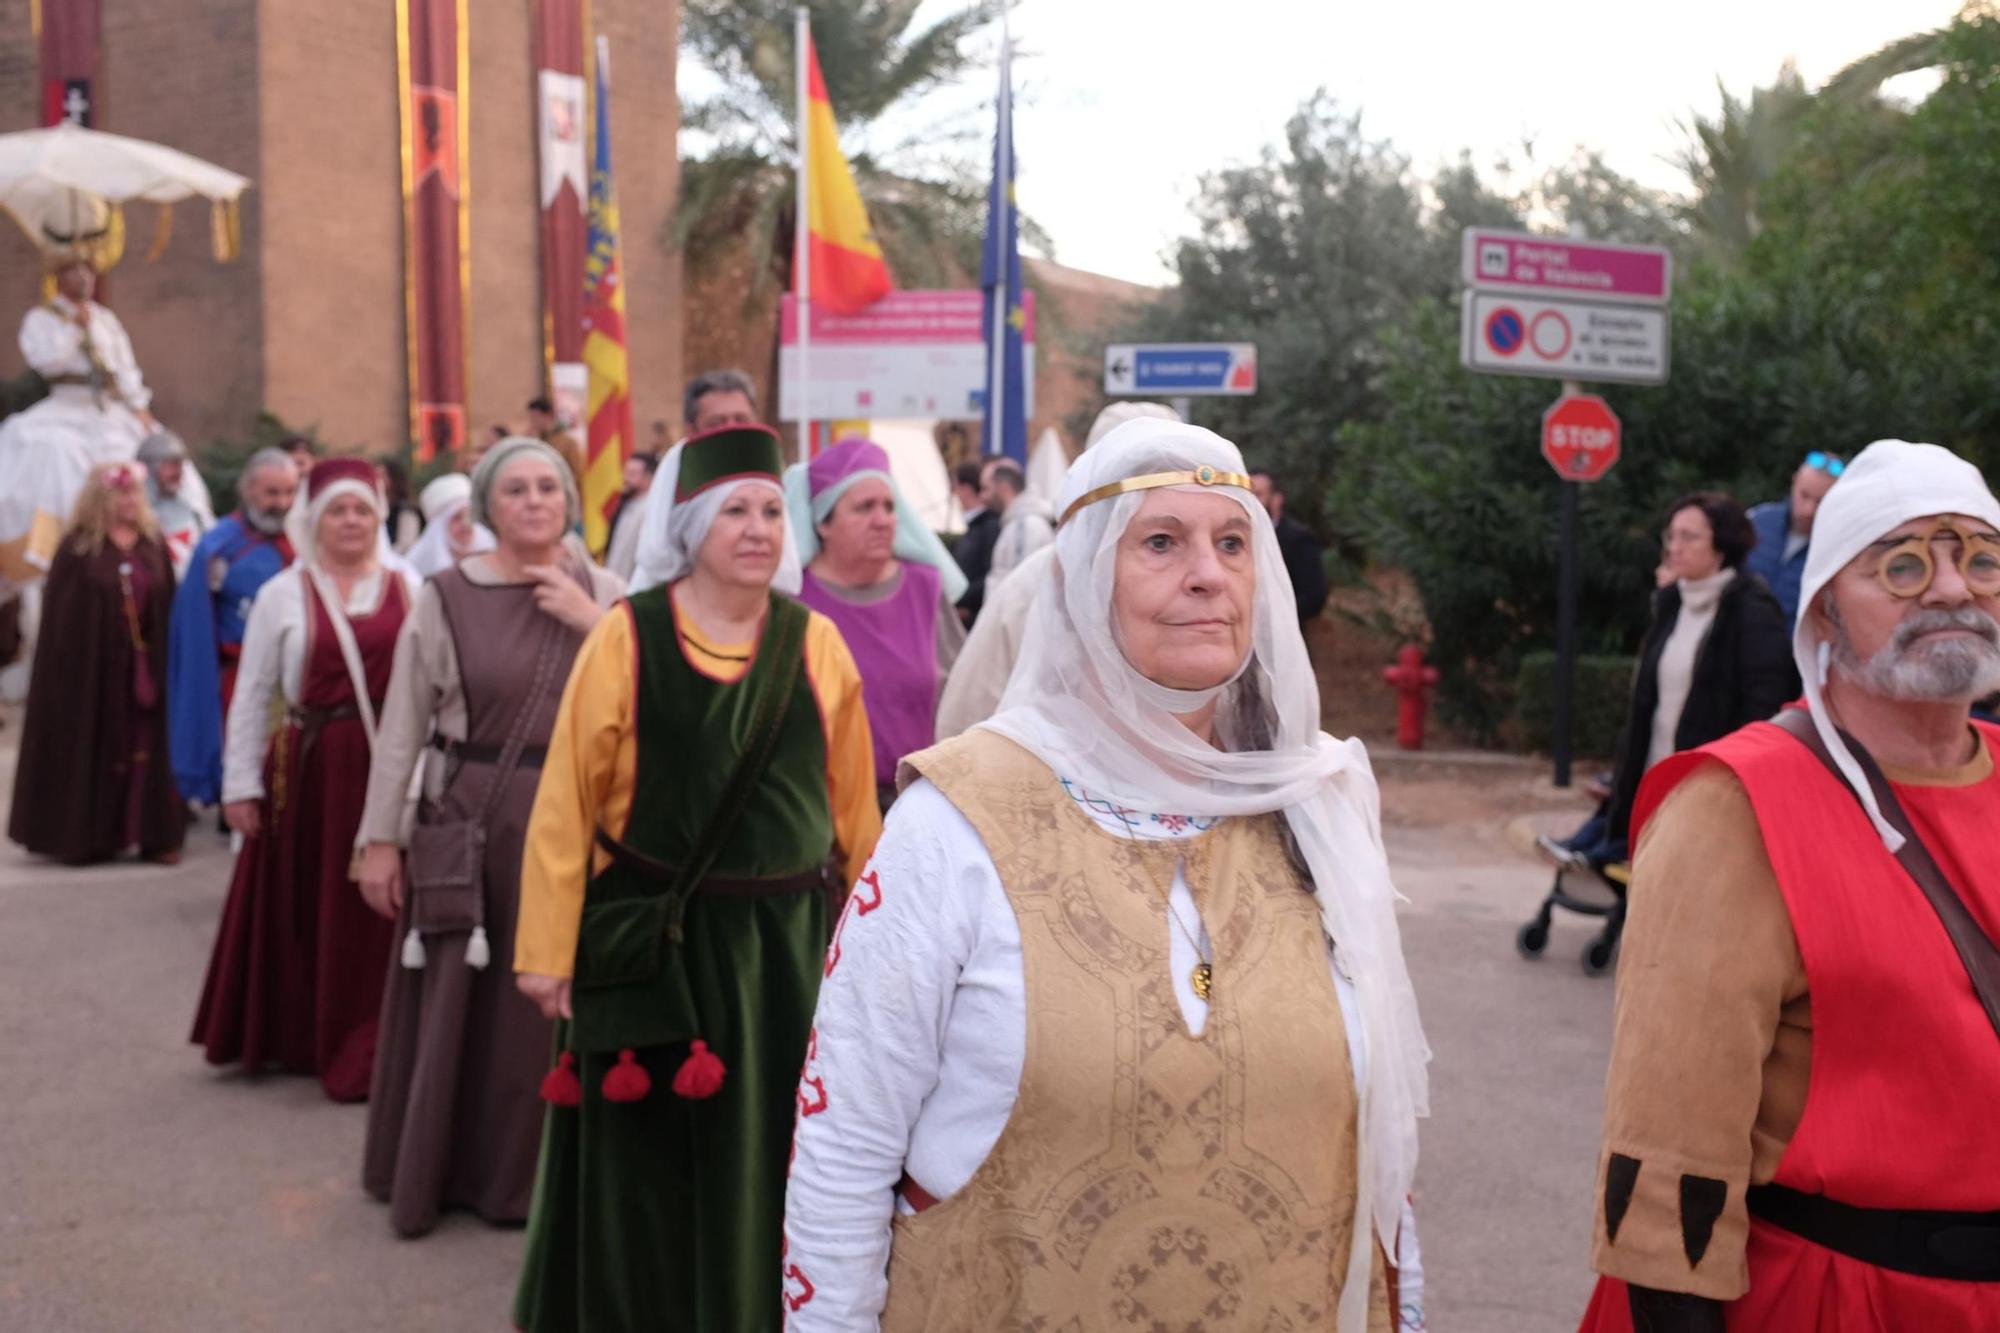 El multitudinario viaje al pasado de la Feria Medieval de Mascarell, en imágenes